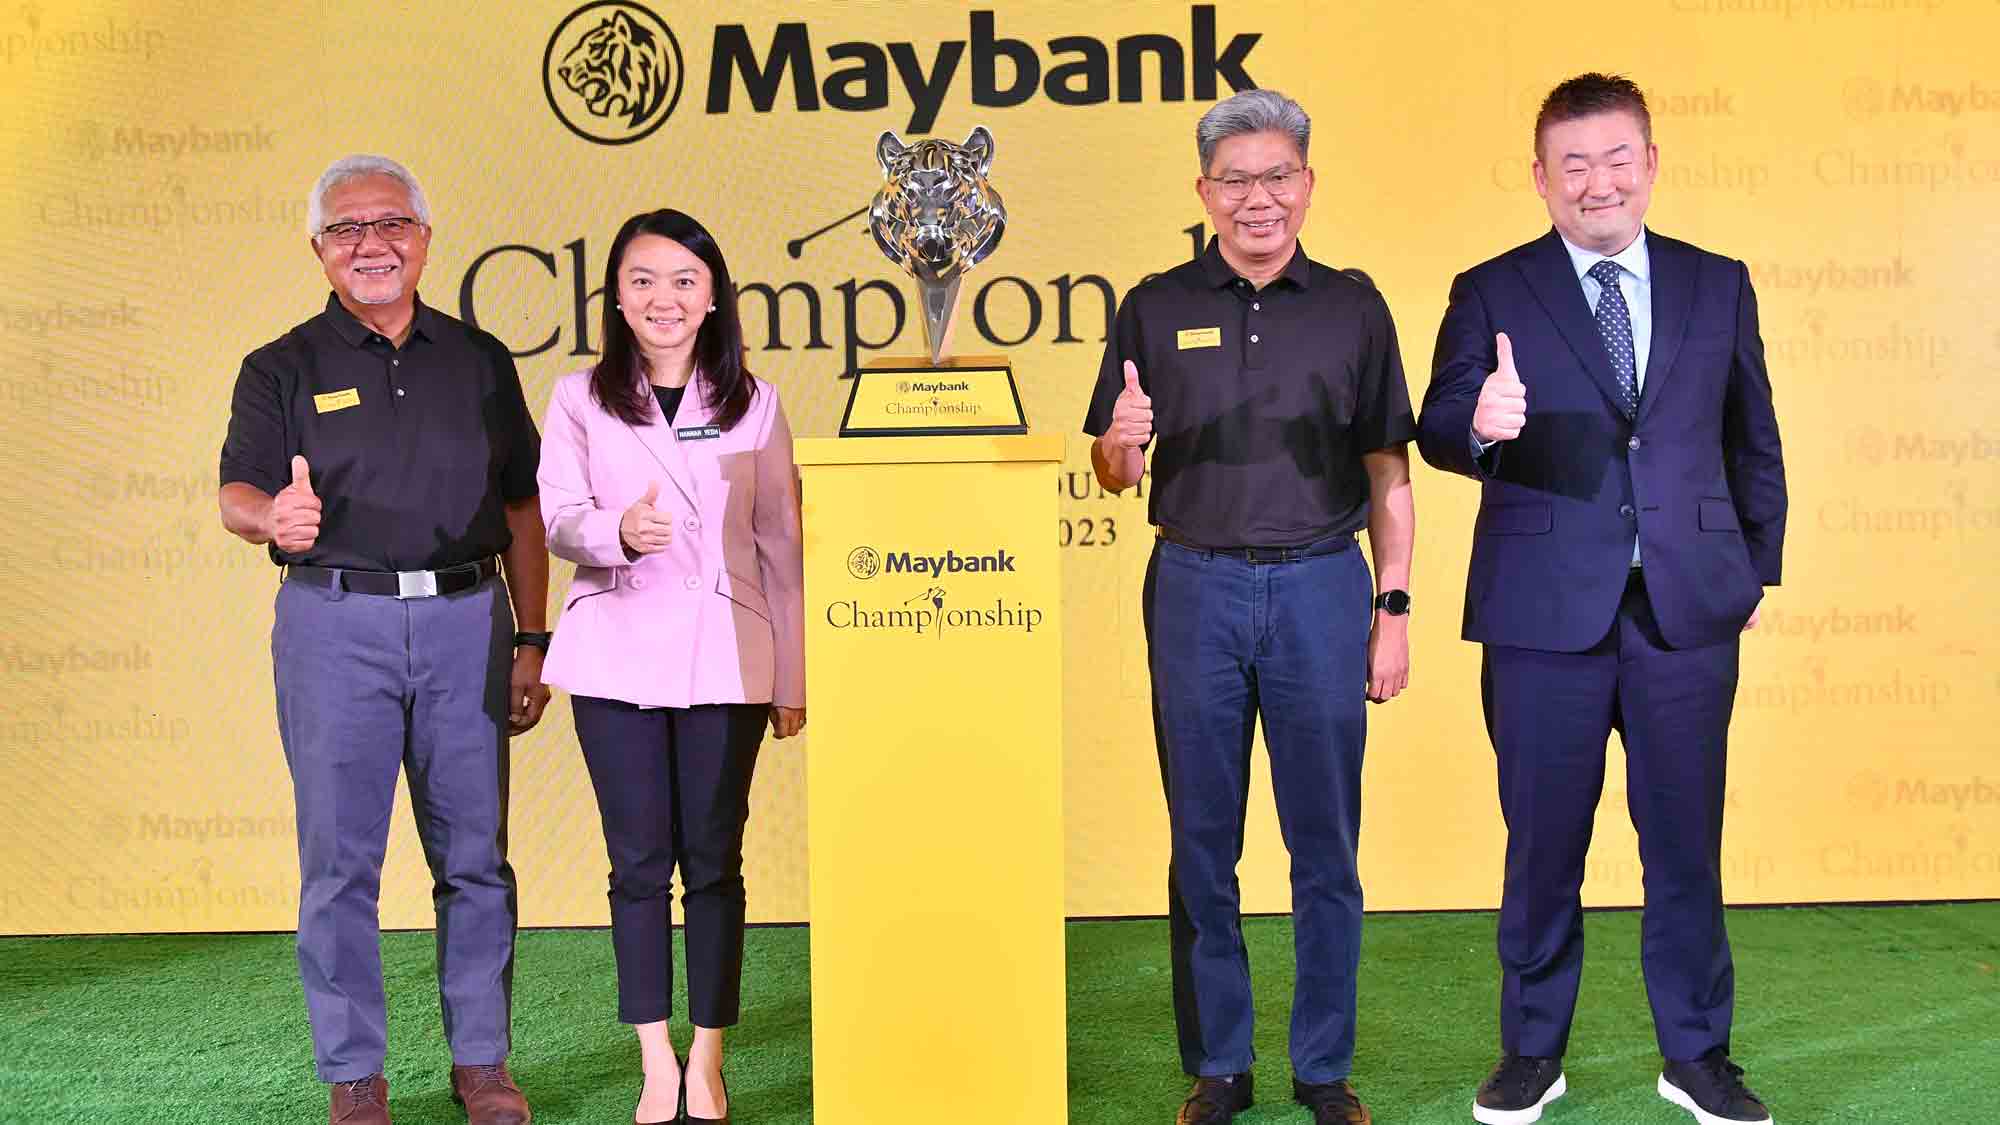 LPGA Announces Return to Malaysia for Maybank Championship LPGA